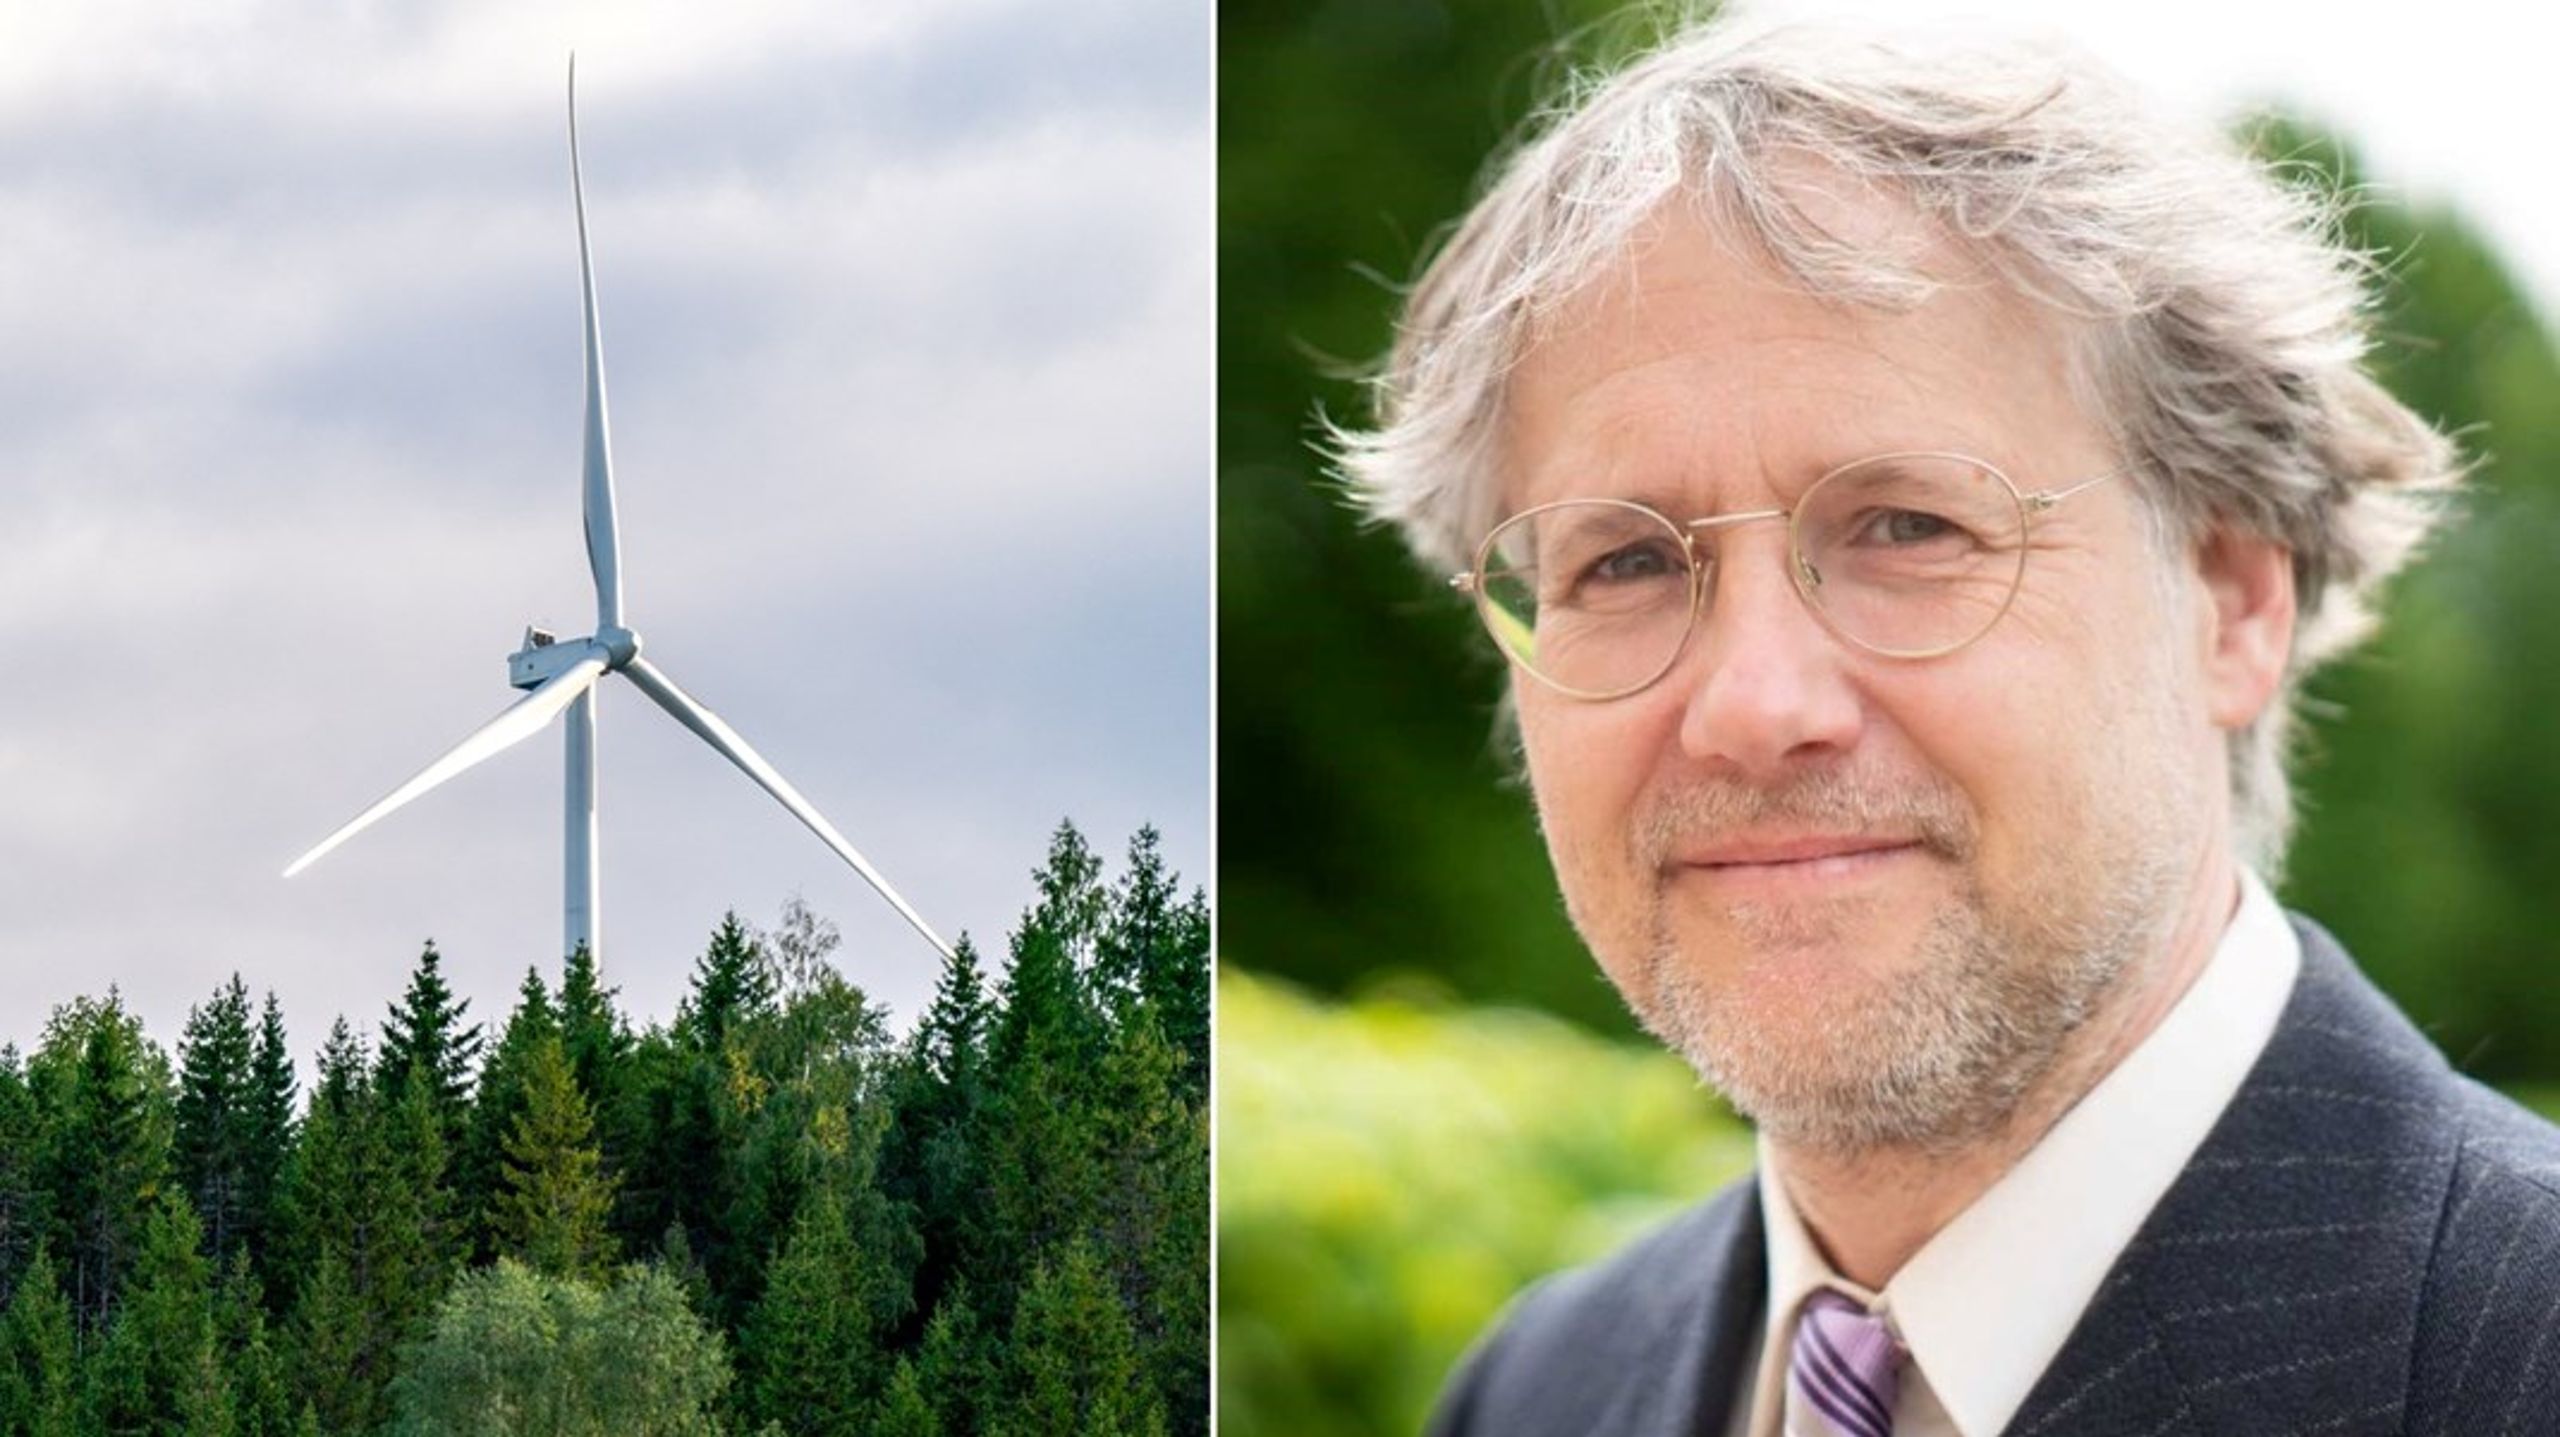 &nbsp;Sverige behöver lära sig att hantera effekttopparna i energisystemet, menar debattören.